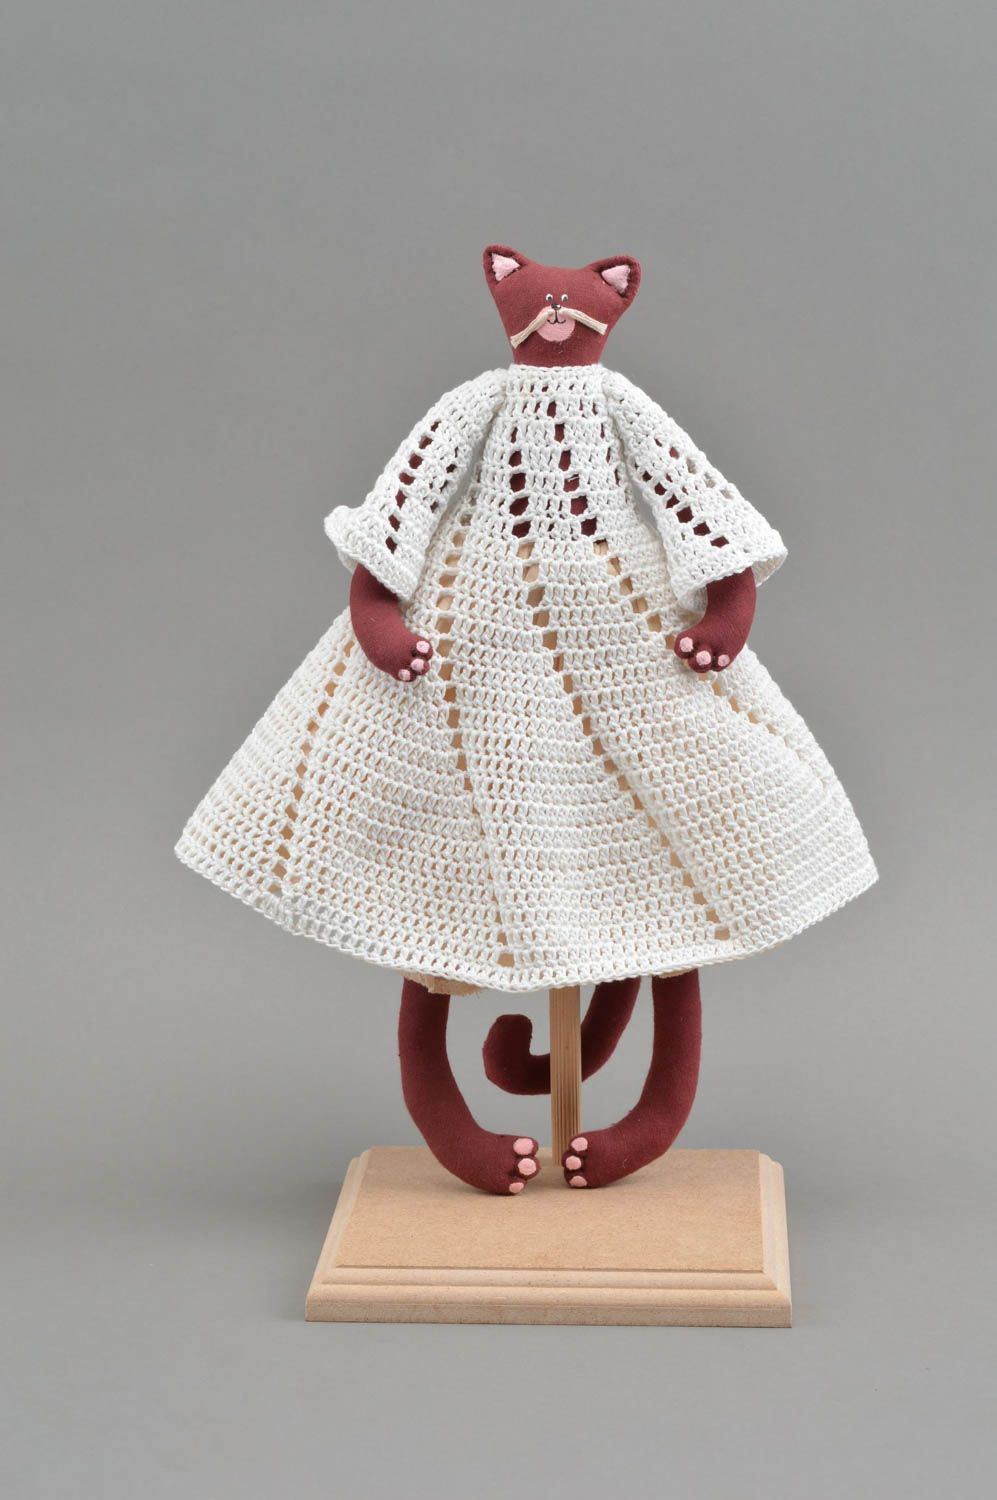 Тканевая игрушка кошка бордовая в вязаном платье красивая небольшая хэнд мейд фото 2